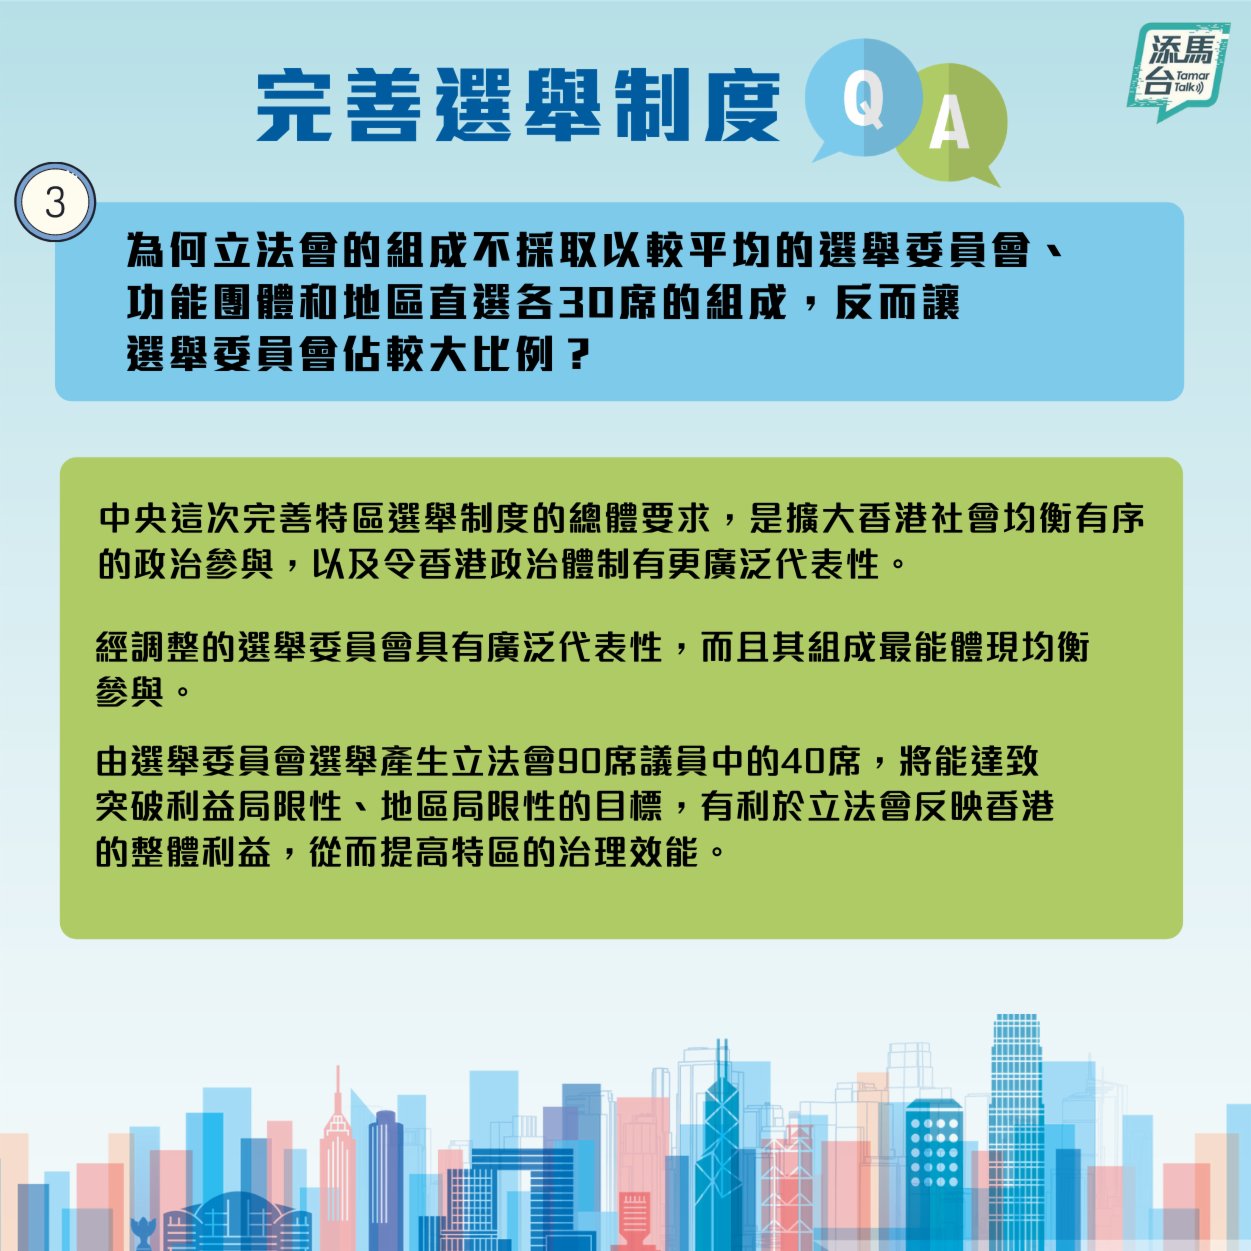 特區政府近日在社交媒體上發文製圖，系統回答了怎樣可以擴大香港均衡有序的政治參與，令立法會有更廣泛的代表性？地區直選改為「雙議席、單票制」又有什麼好處？等一系列的問題。